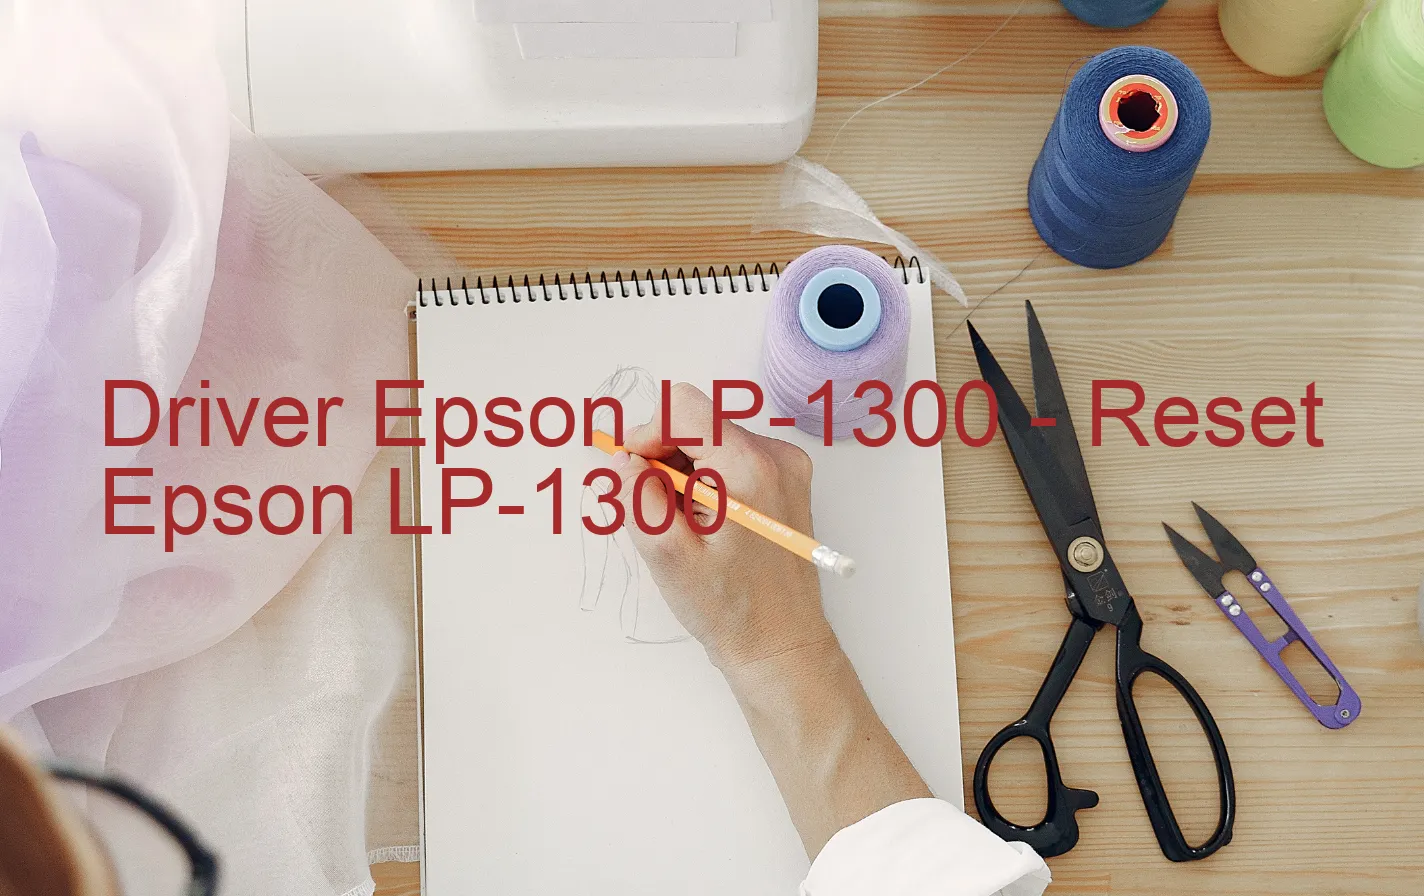 Epson LP-1300のドライバー、Epson LP-1300のリセットソフトウェア